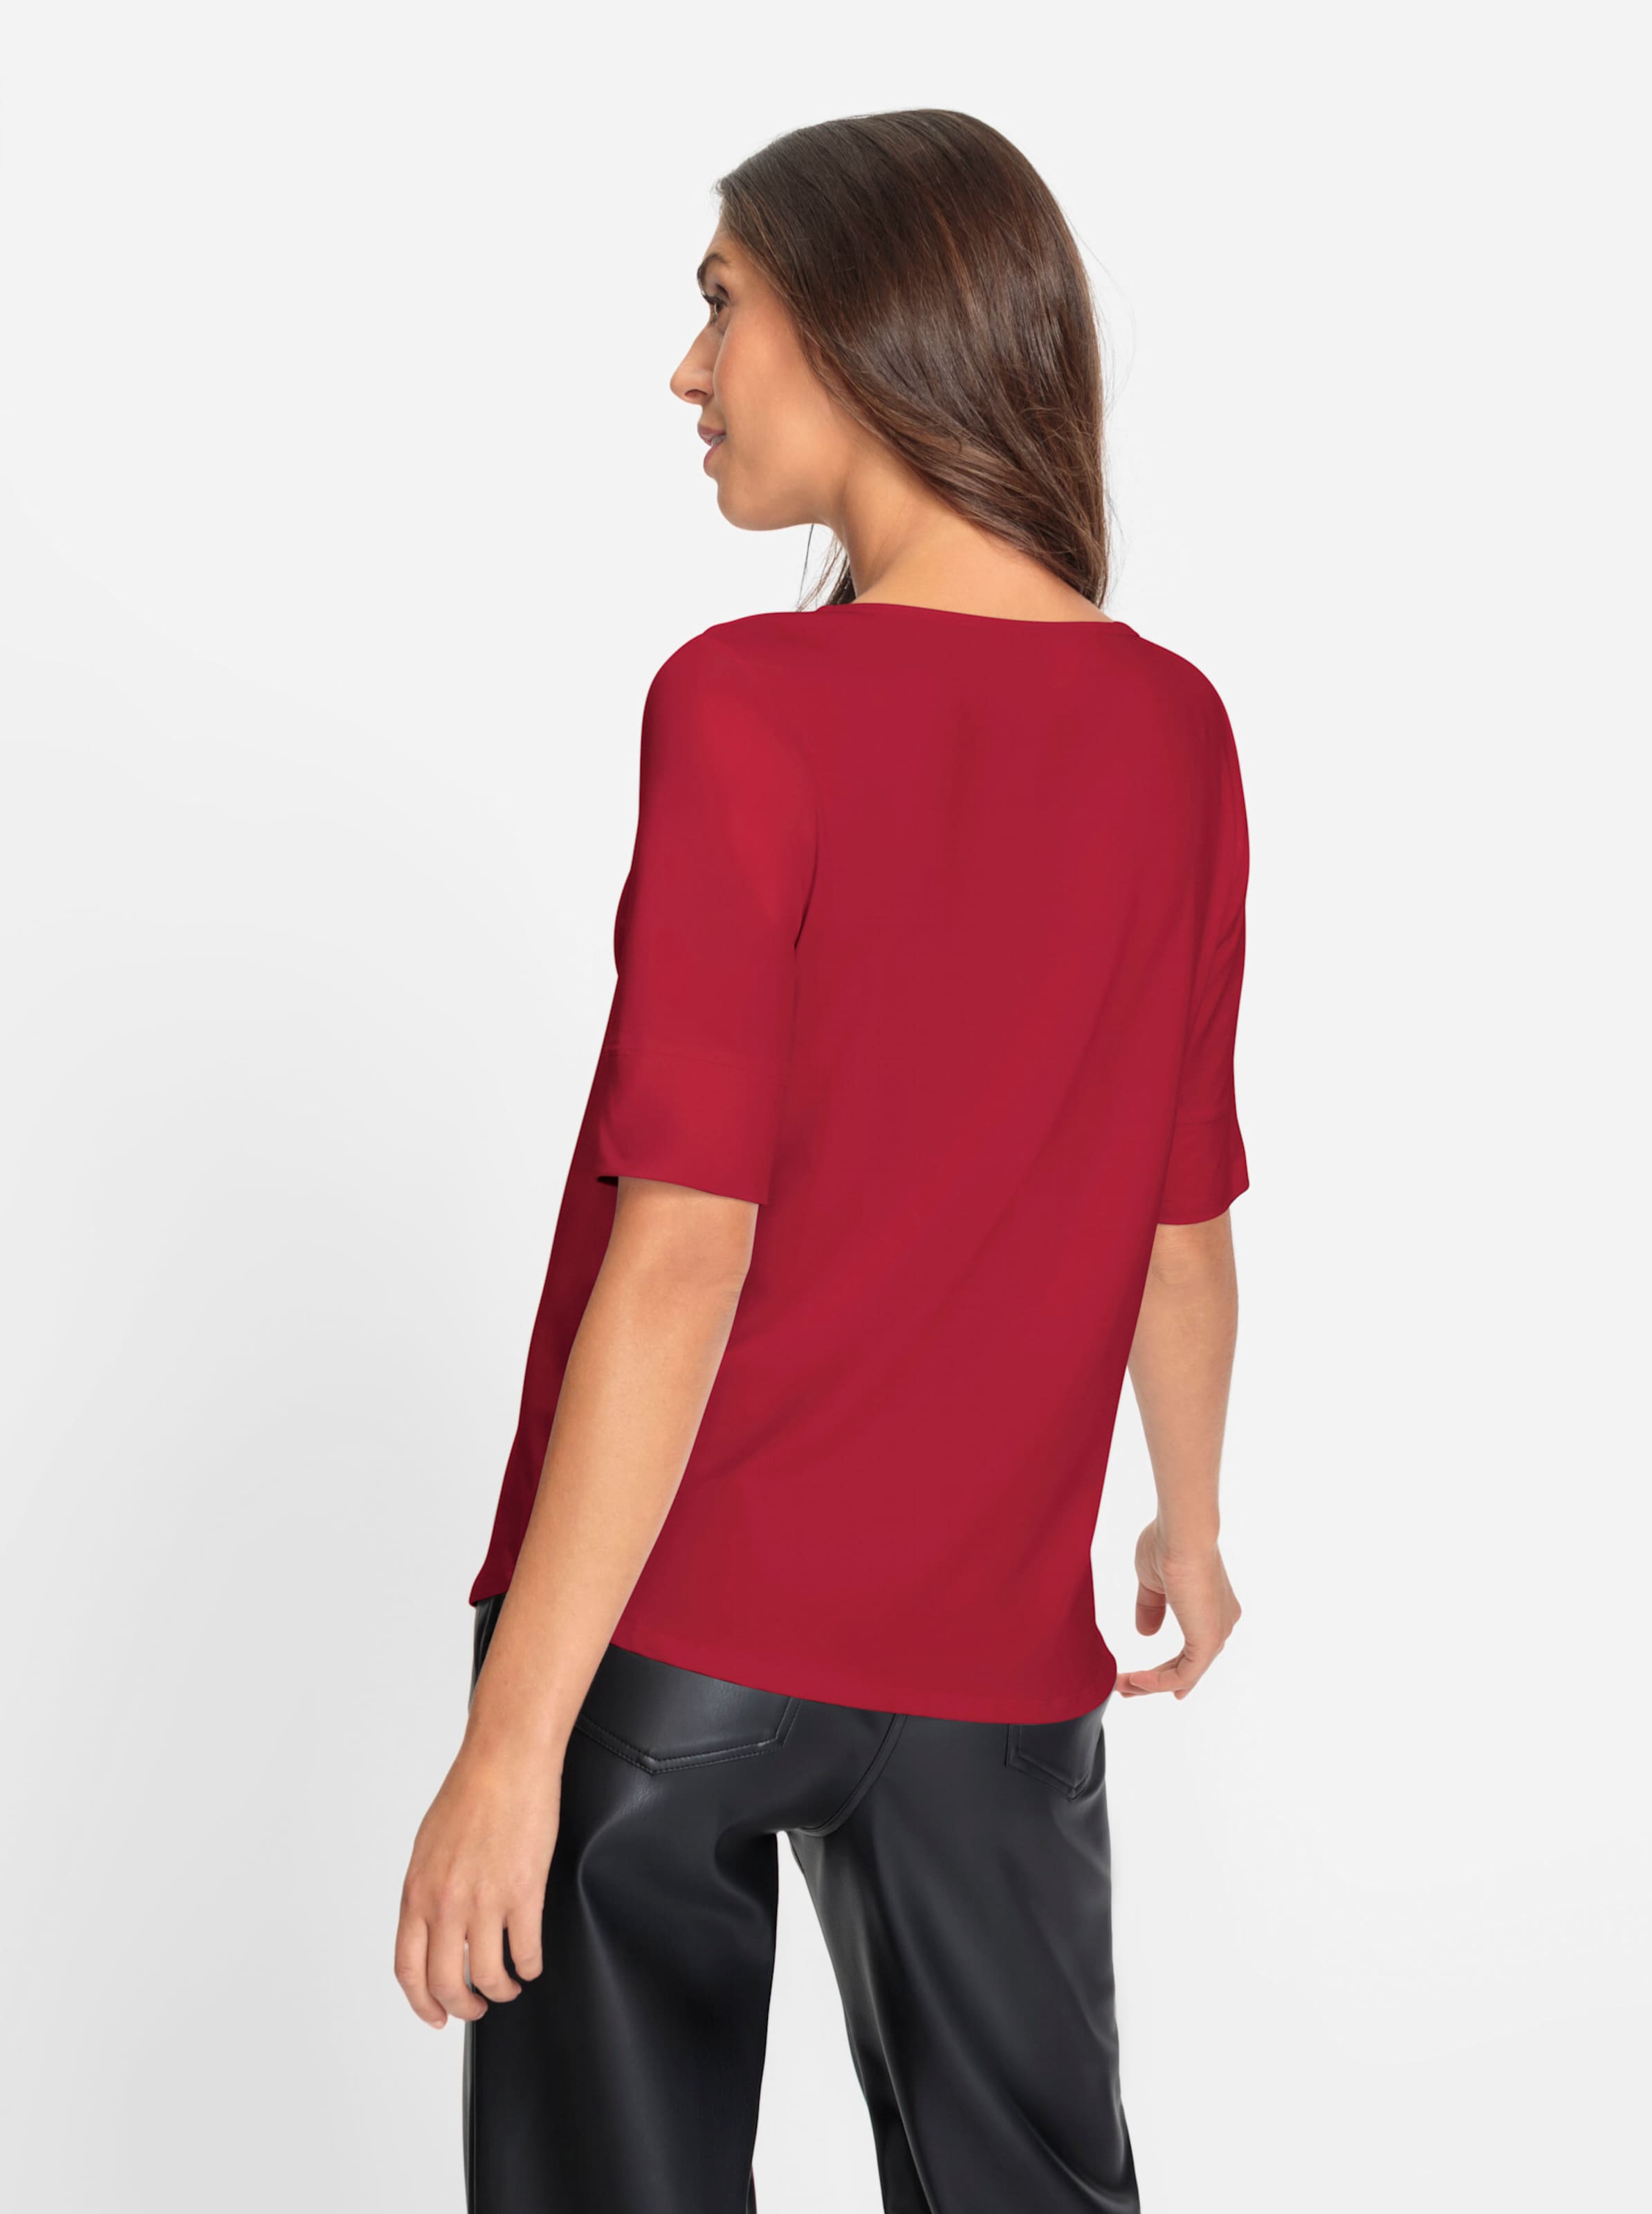 Was eine günstig Kaufen-Shirt in rot von heine. Shirt in rot von heine <![CDATA[Shirt Aus angenehmer knitterarmen Tactel-Qualität. Femininer weiter Rundhals-Ausschnitt. Leicht tailliert mit etwas längerem Halbarm. Bequeme Bündchen an den Ärmeln.]]>. 